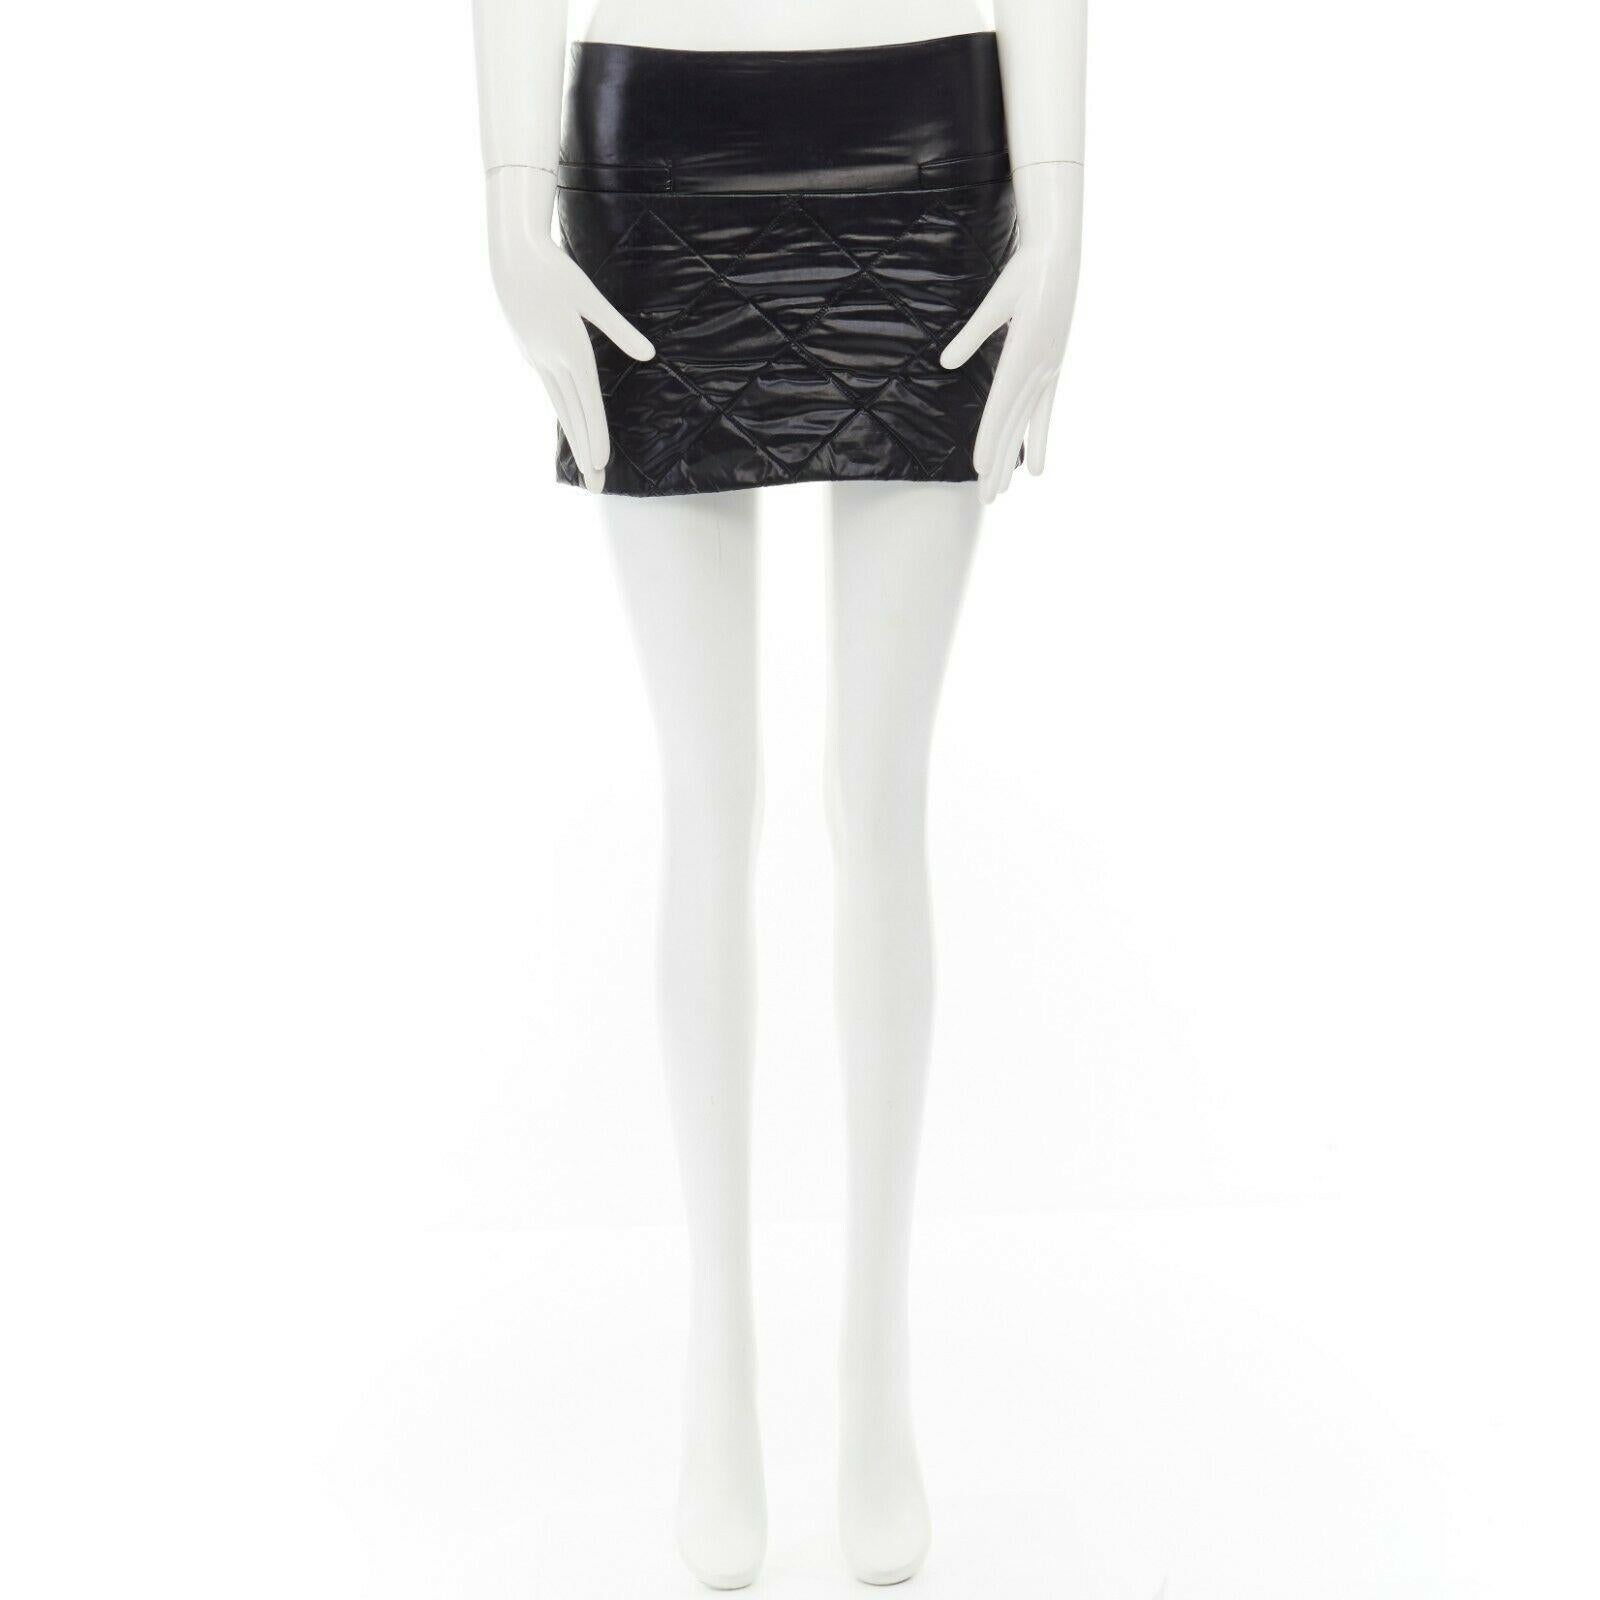 black nylon skirt